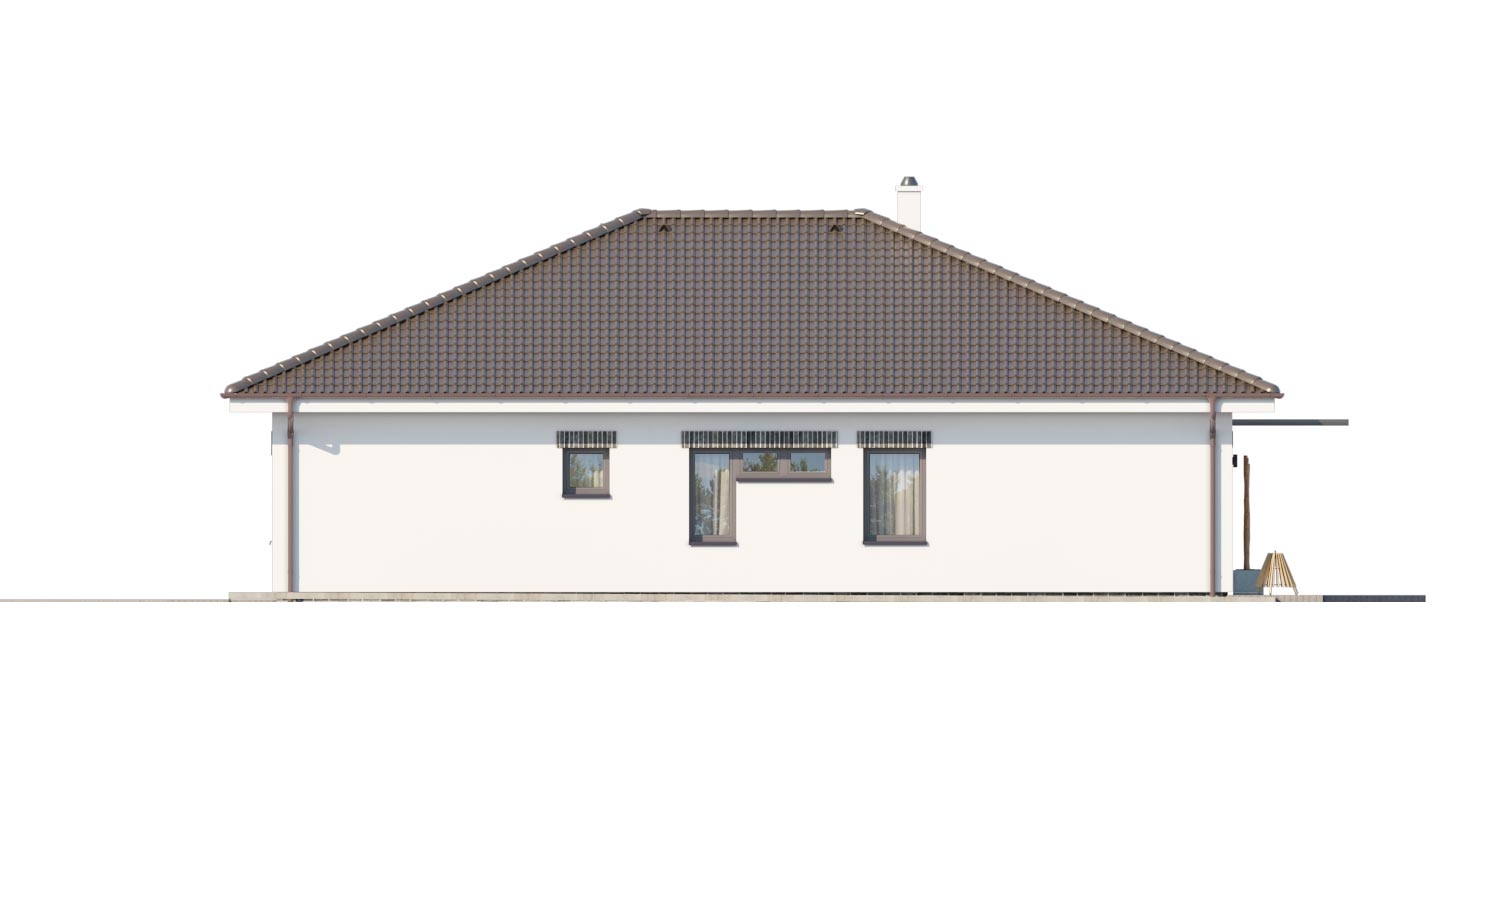 Zrkadlový pohľad 2. - Moderní projekt rodinného domu s valbovou střechou. Novinka 2019. Menší pokoj je vhodná jako pracovna nebo šatník.